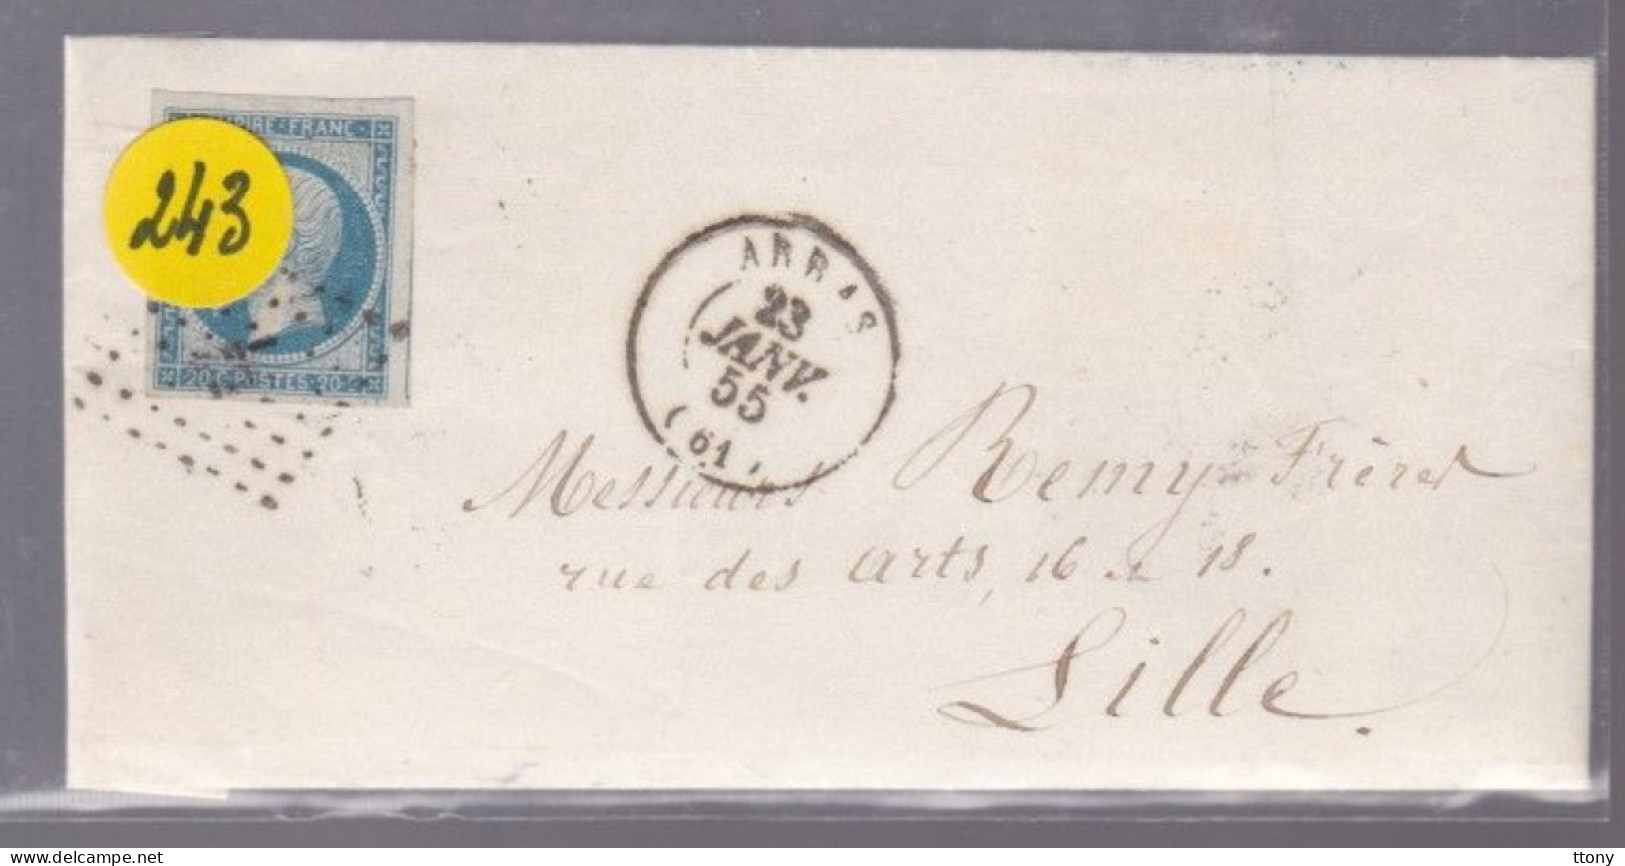 Un Timbre Napoléon III   N° 14  20 C Bleu   Arras 1855   Destination Lille - 1853-1860 Napoleon III